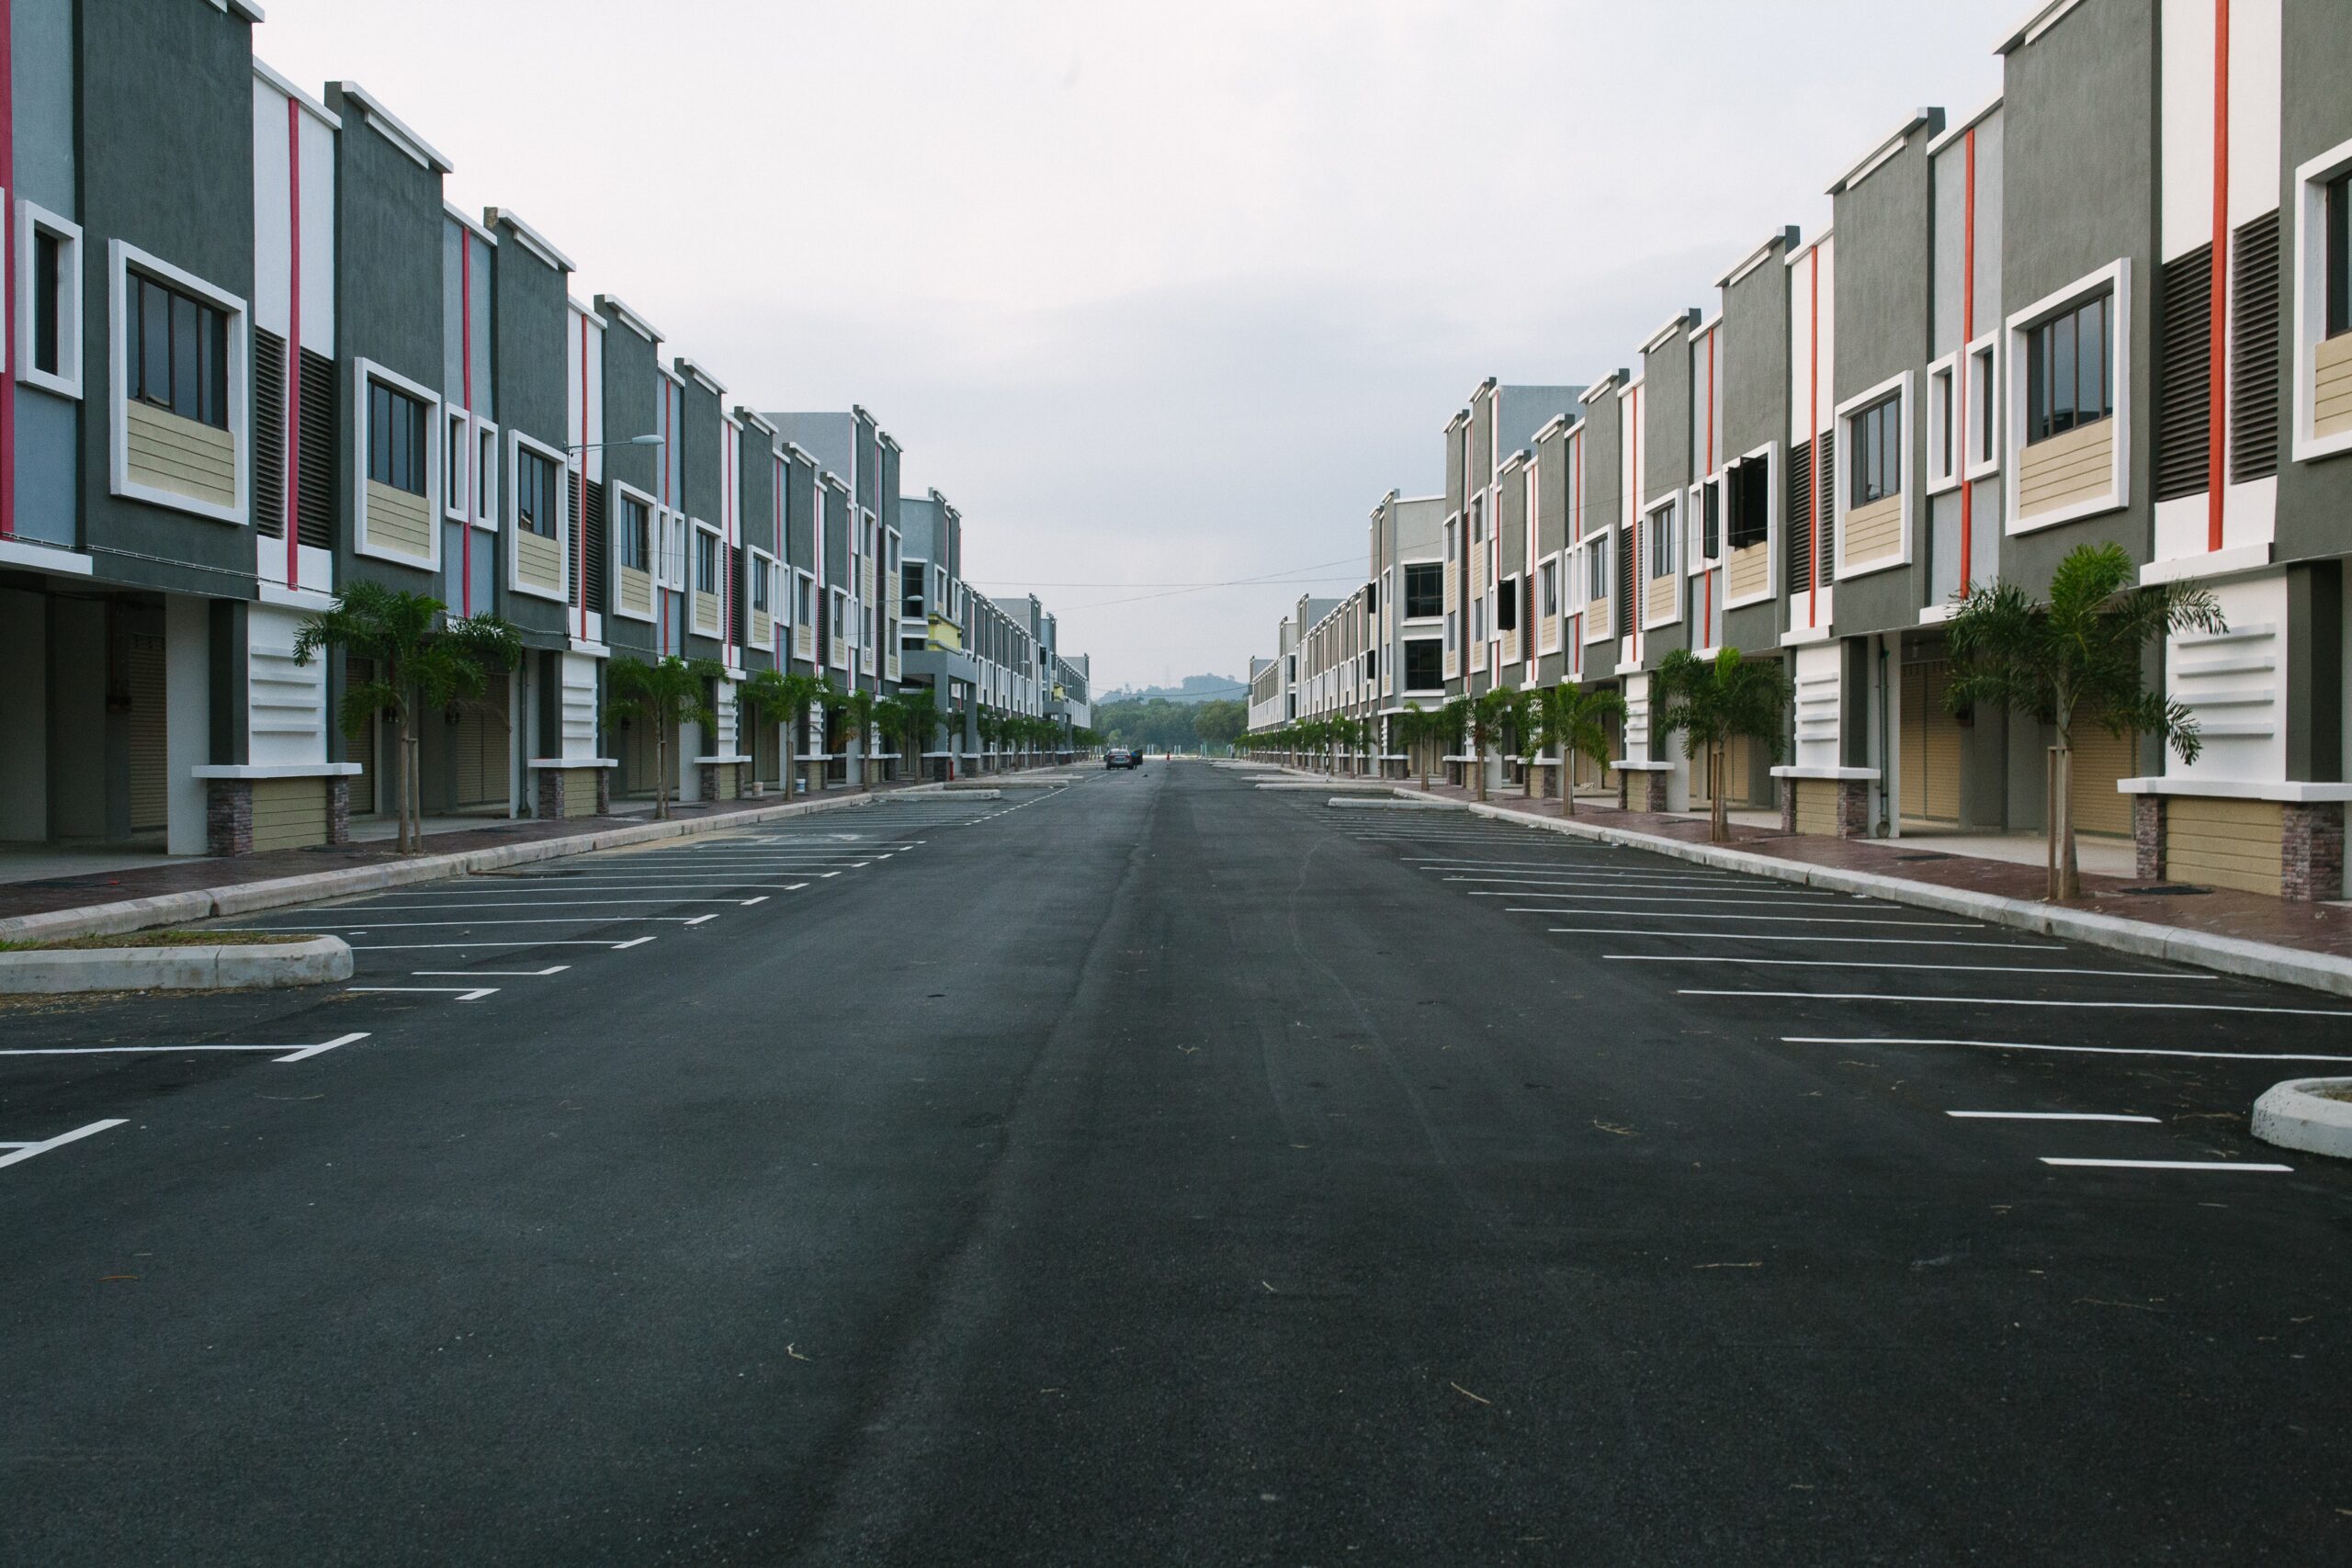 Apartment complex parking lot